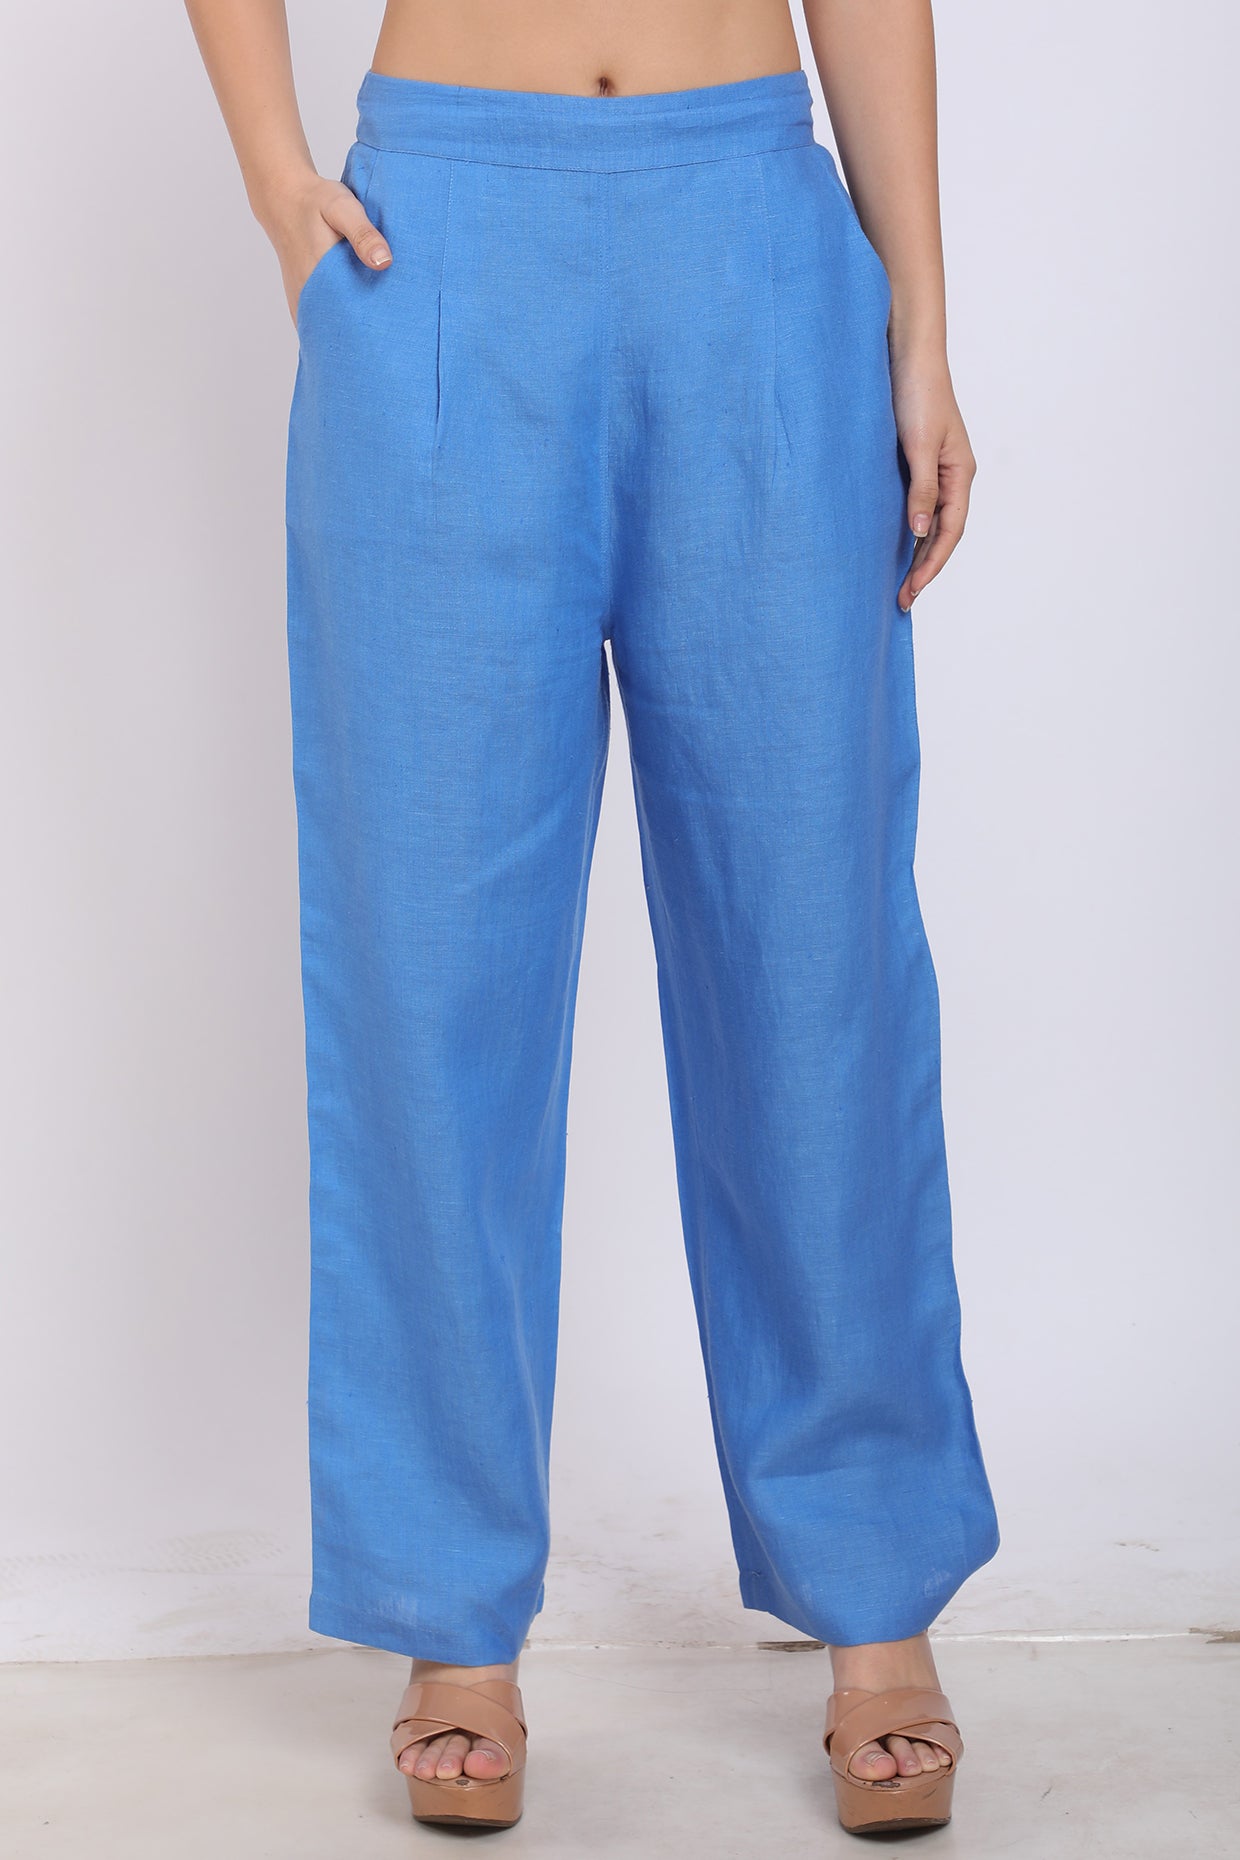 Buy Premium and 100% Pure Men's Linen Pants Online